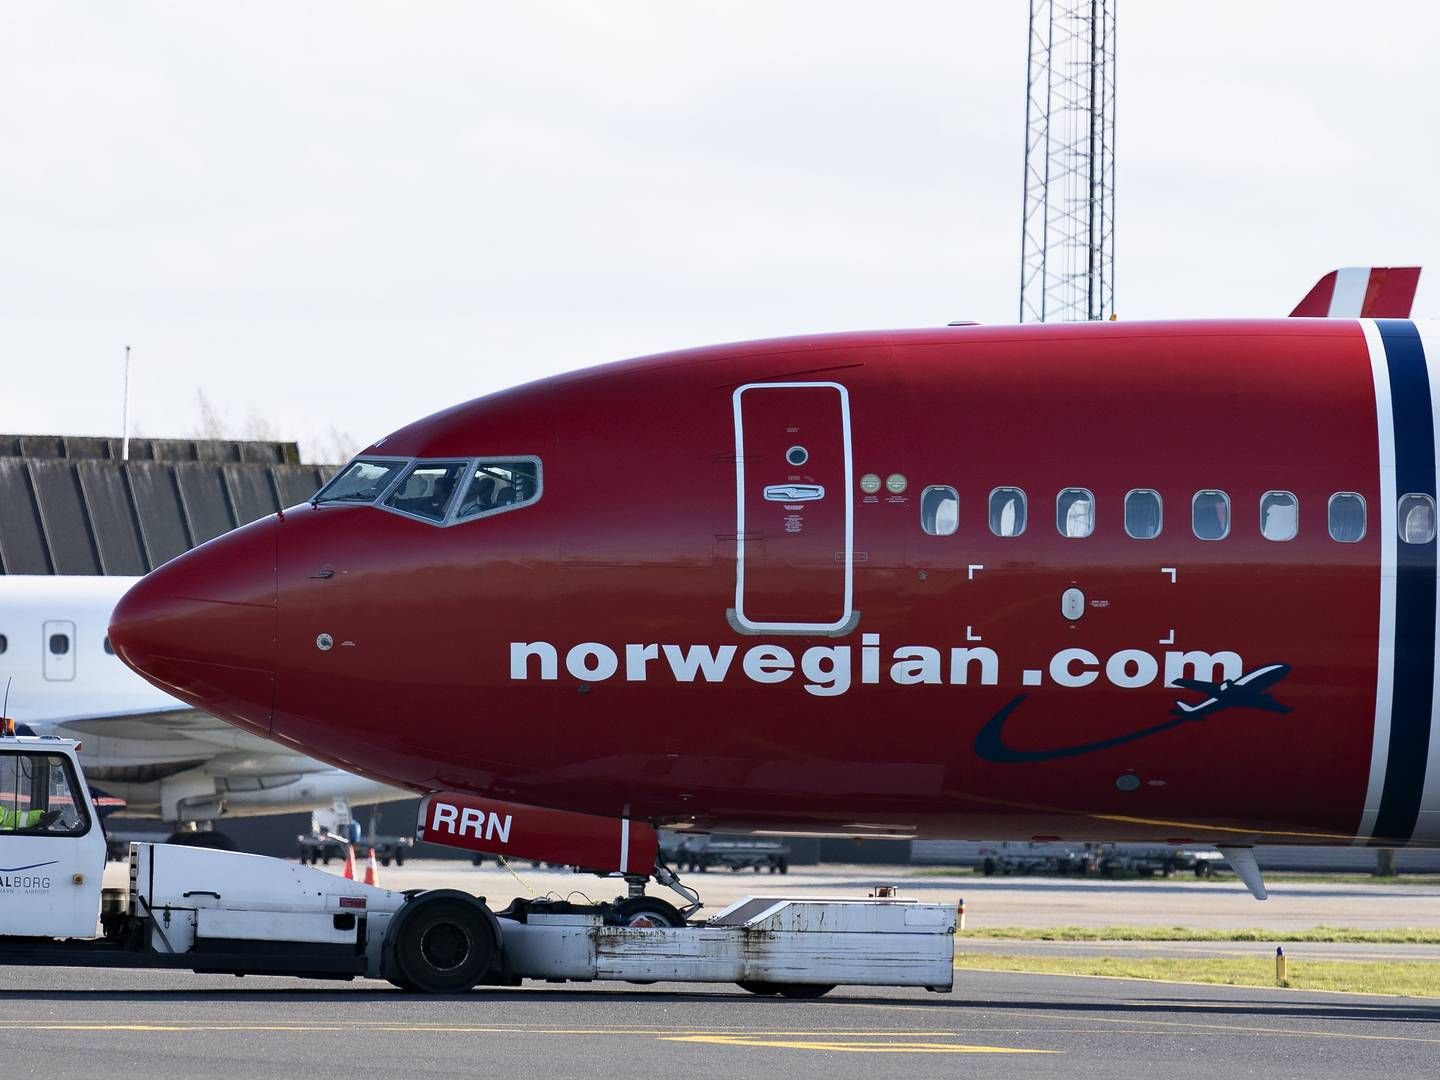 Norwegians flyaktiver er indregistret i Irland, hvor selskabet har opnået fem måneders kreditorbeskyttelse til reorganisering. | Foto: HENNING BAGGER/Henning Bagger / henning bagger